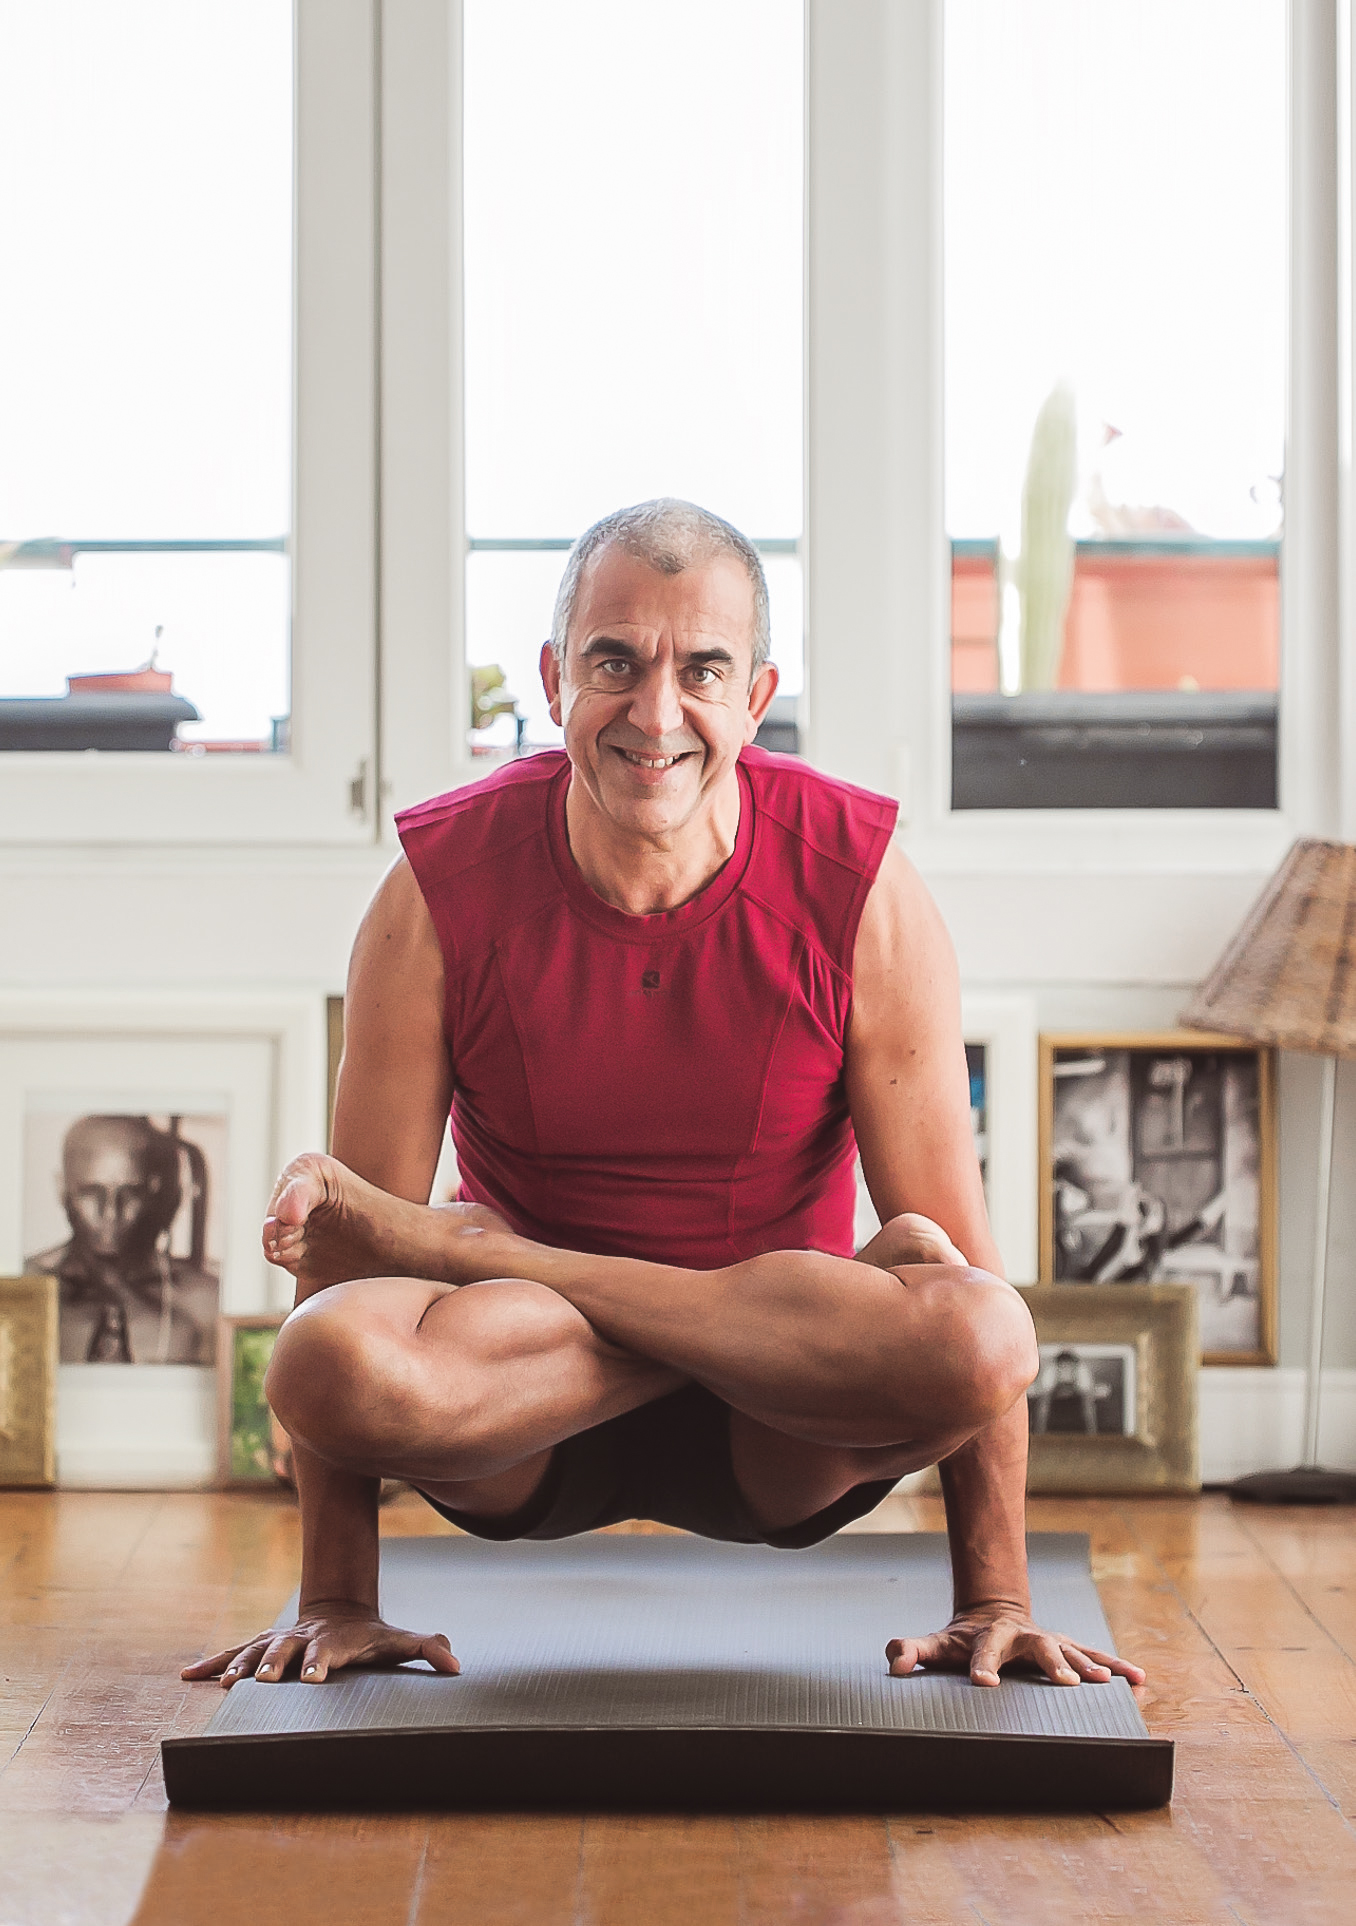 Nunca é tarde. O João começou a fazer exercício (Asthanga Yoga) aos 50. E aqui está ele! João-yoga